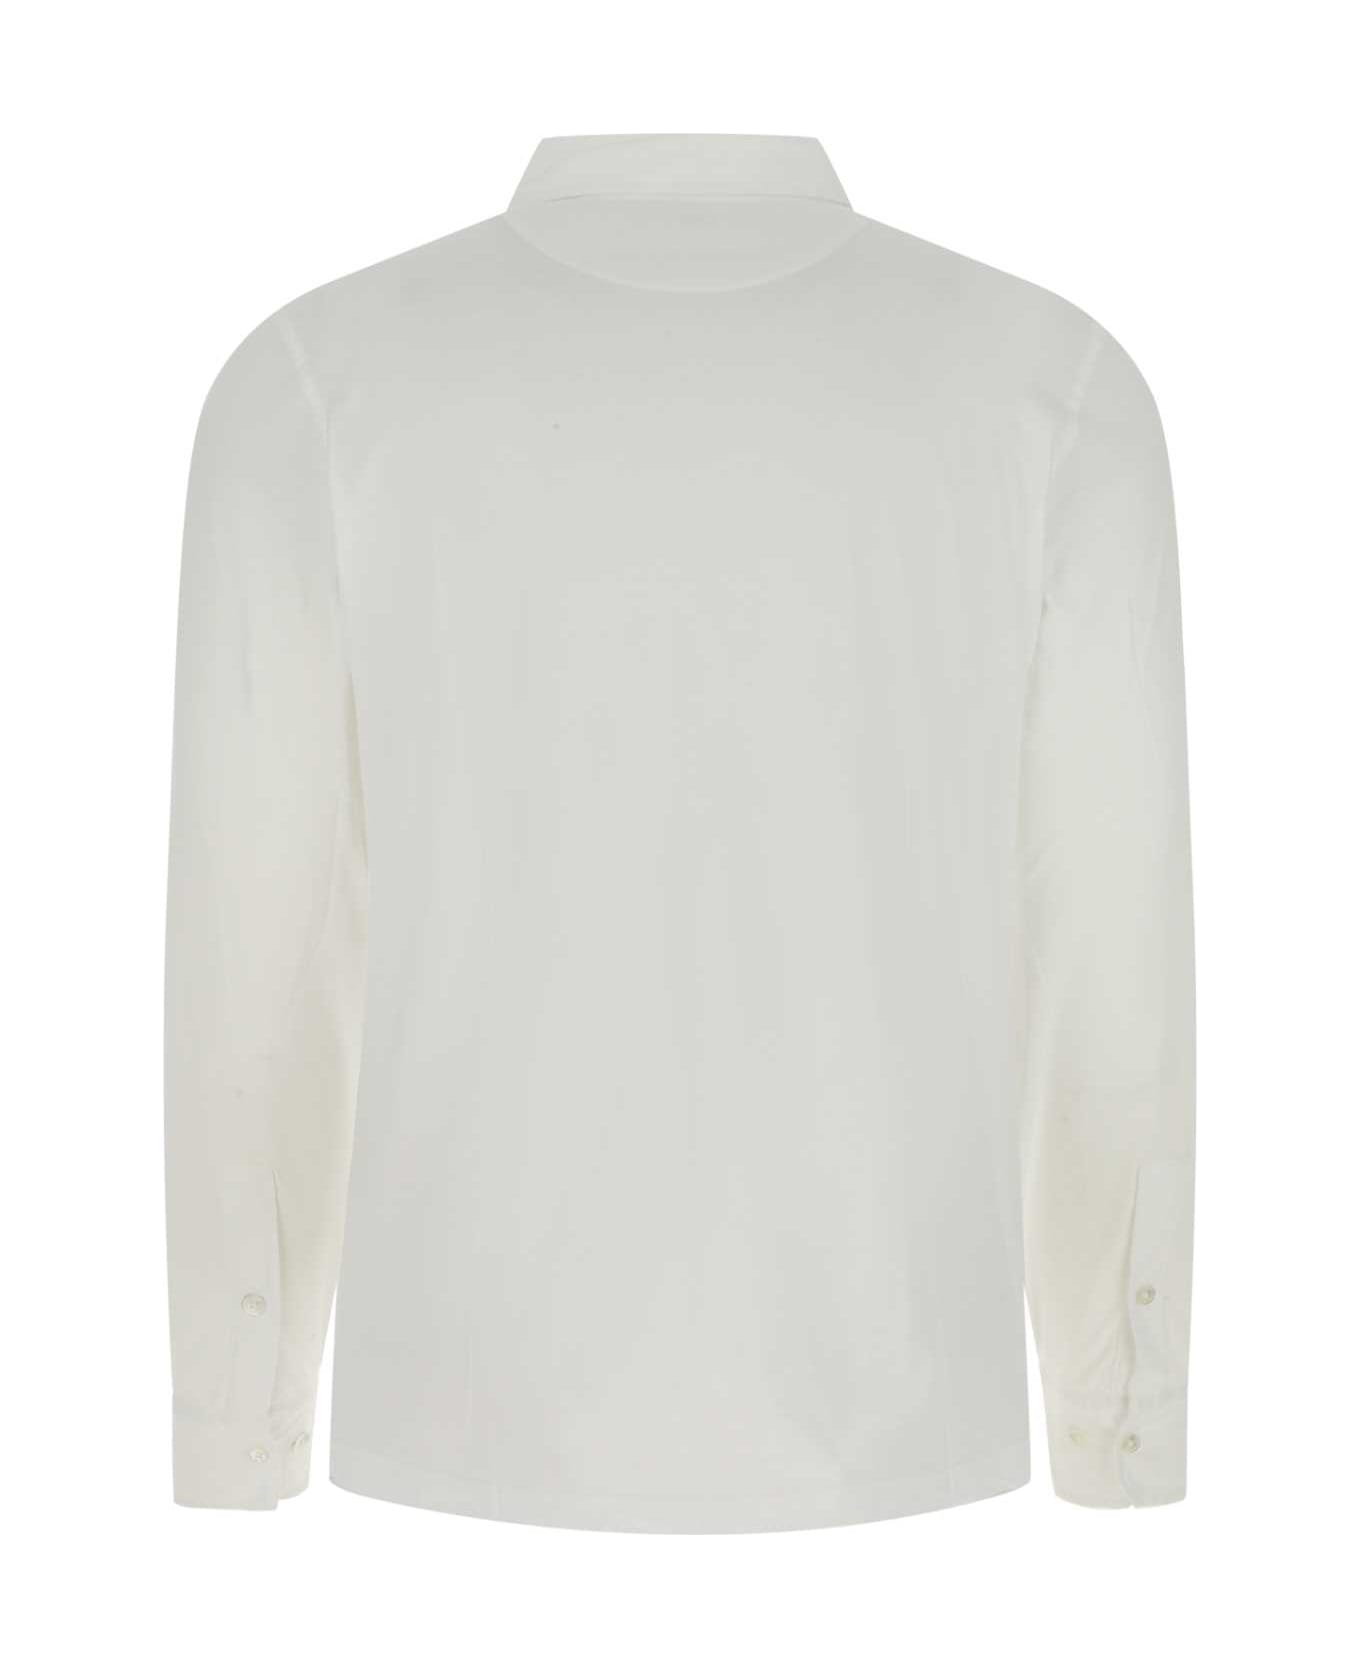 Hartford White Cotton Shirt - 01